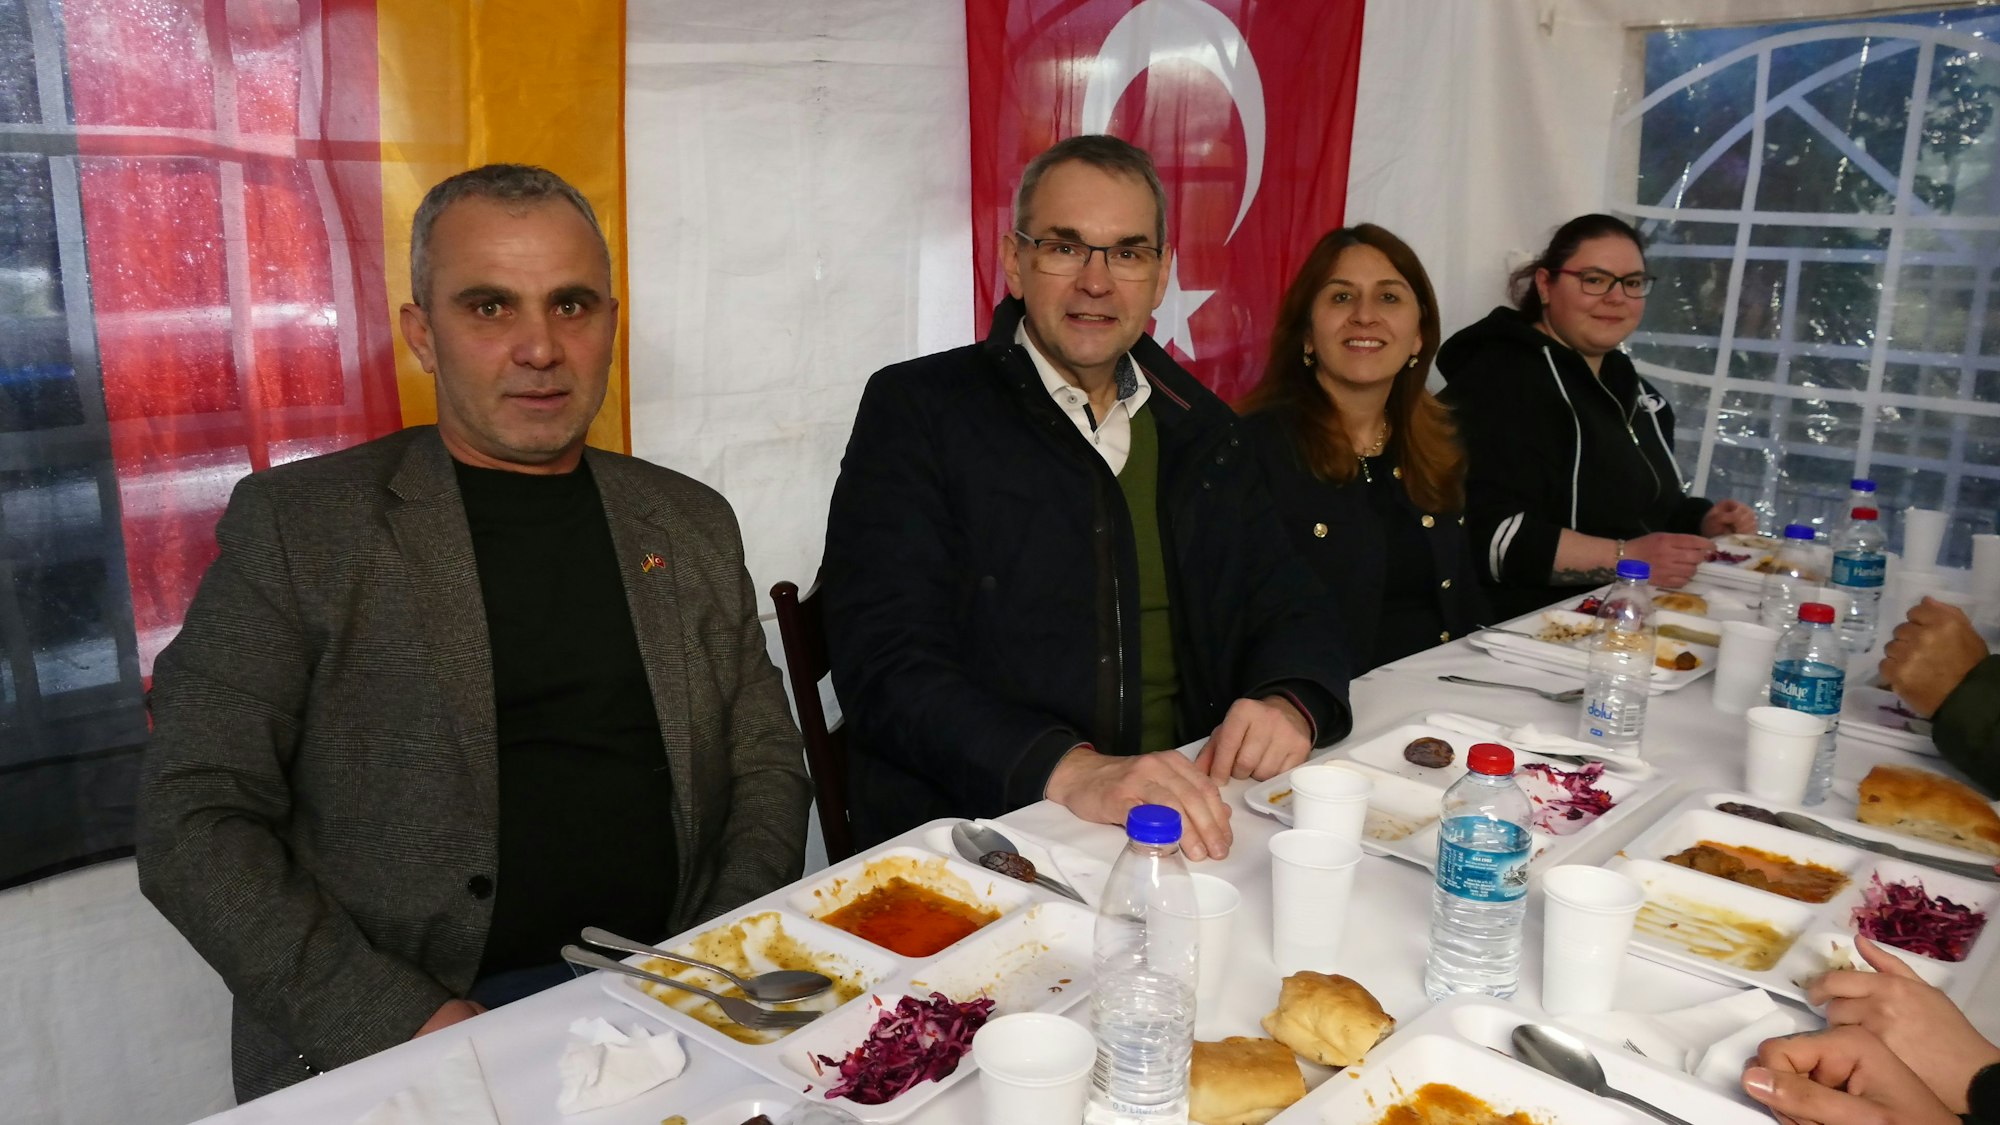 Zwei Männer und zwei Frauen sitzen vor Speisen an einem gedeckten Tisch. Hinter ihnen hängen eine türkische und eine deutsche Fahne.